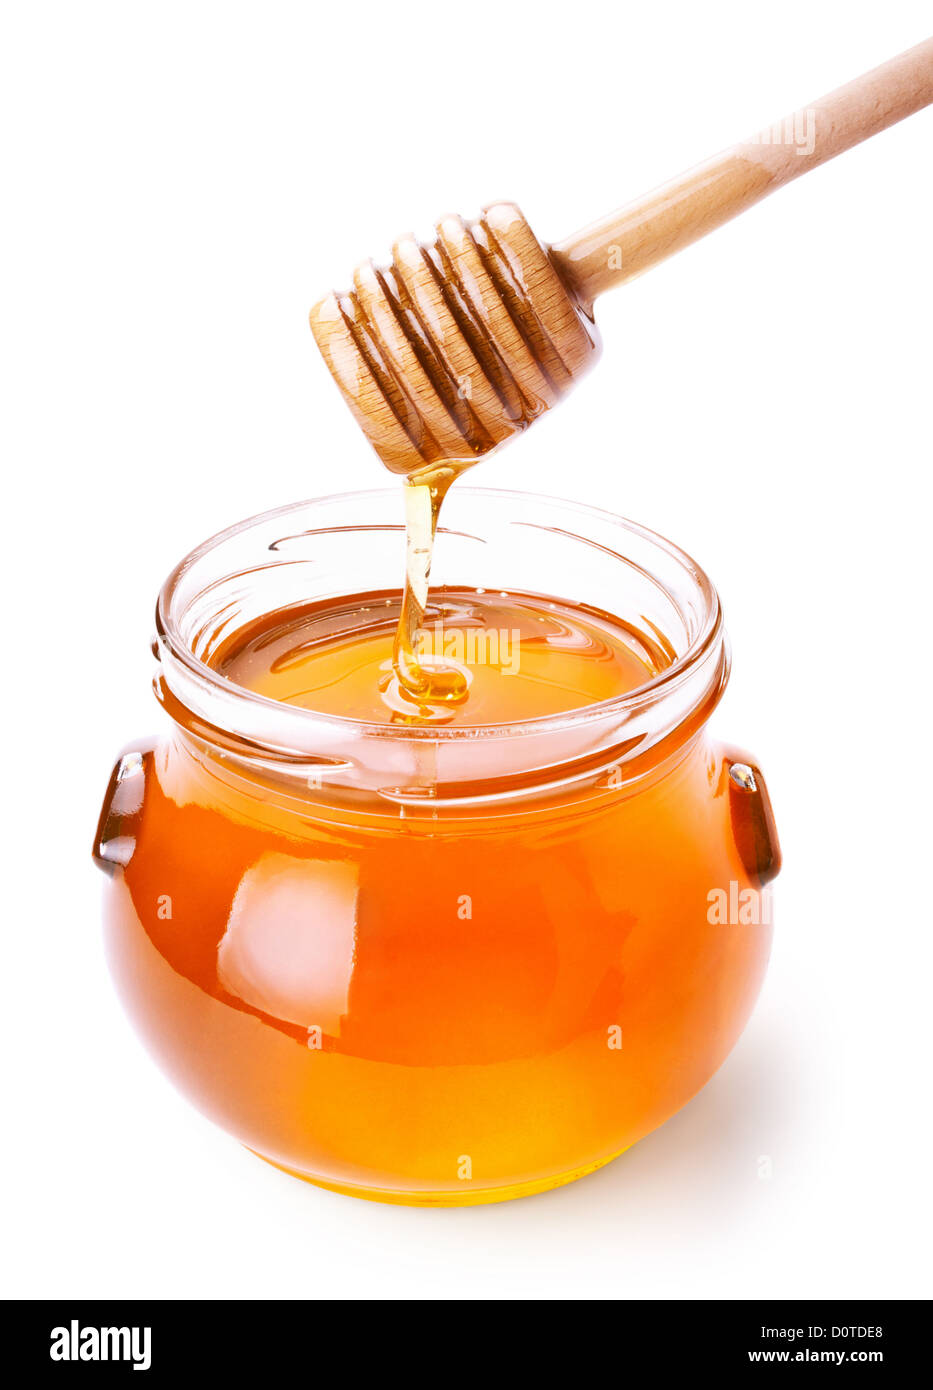 Tarro de miel con madera drizzler aislado sobre fondo blanco. Foto de stock